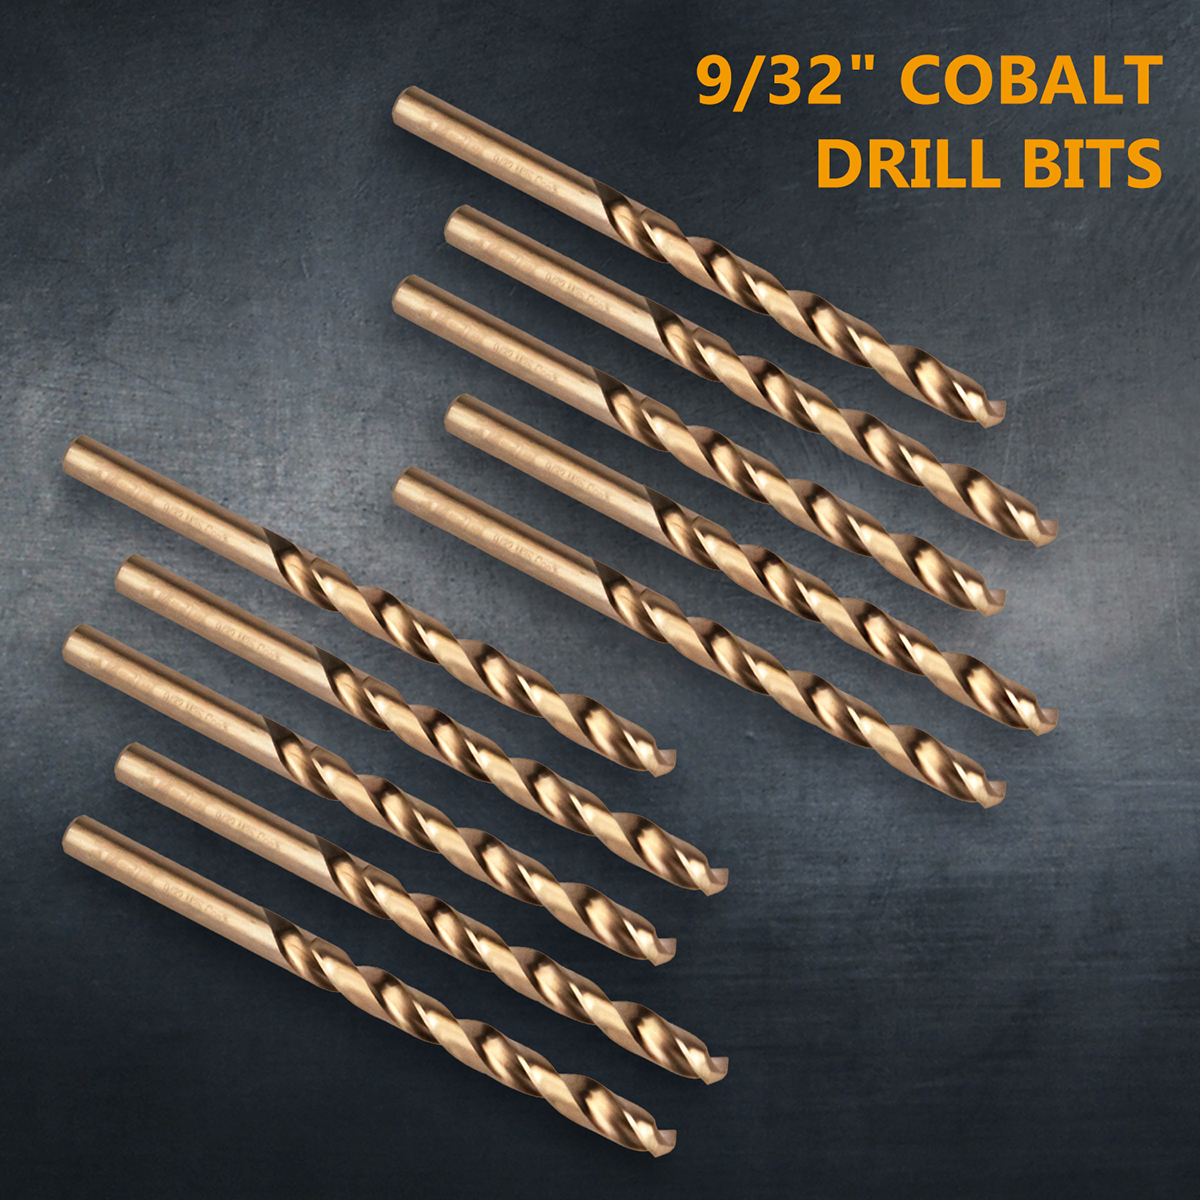 POWERTEC 10PK Cobalt Drill Bit 9/32-Inch Inch | 135 Degree Drill Bit Set (QDB2018) - image 2 of 7